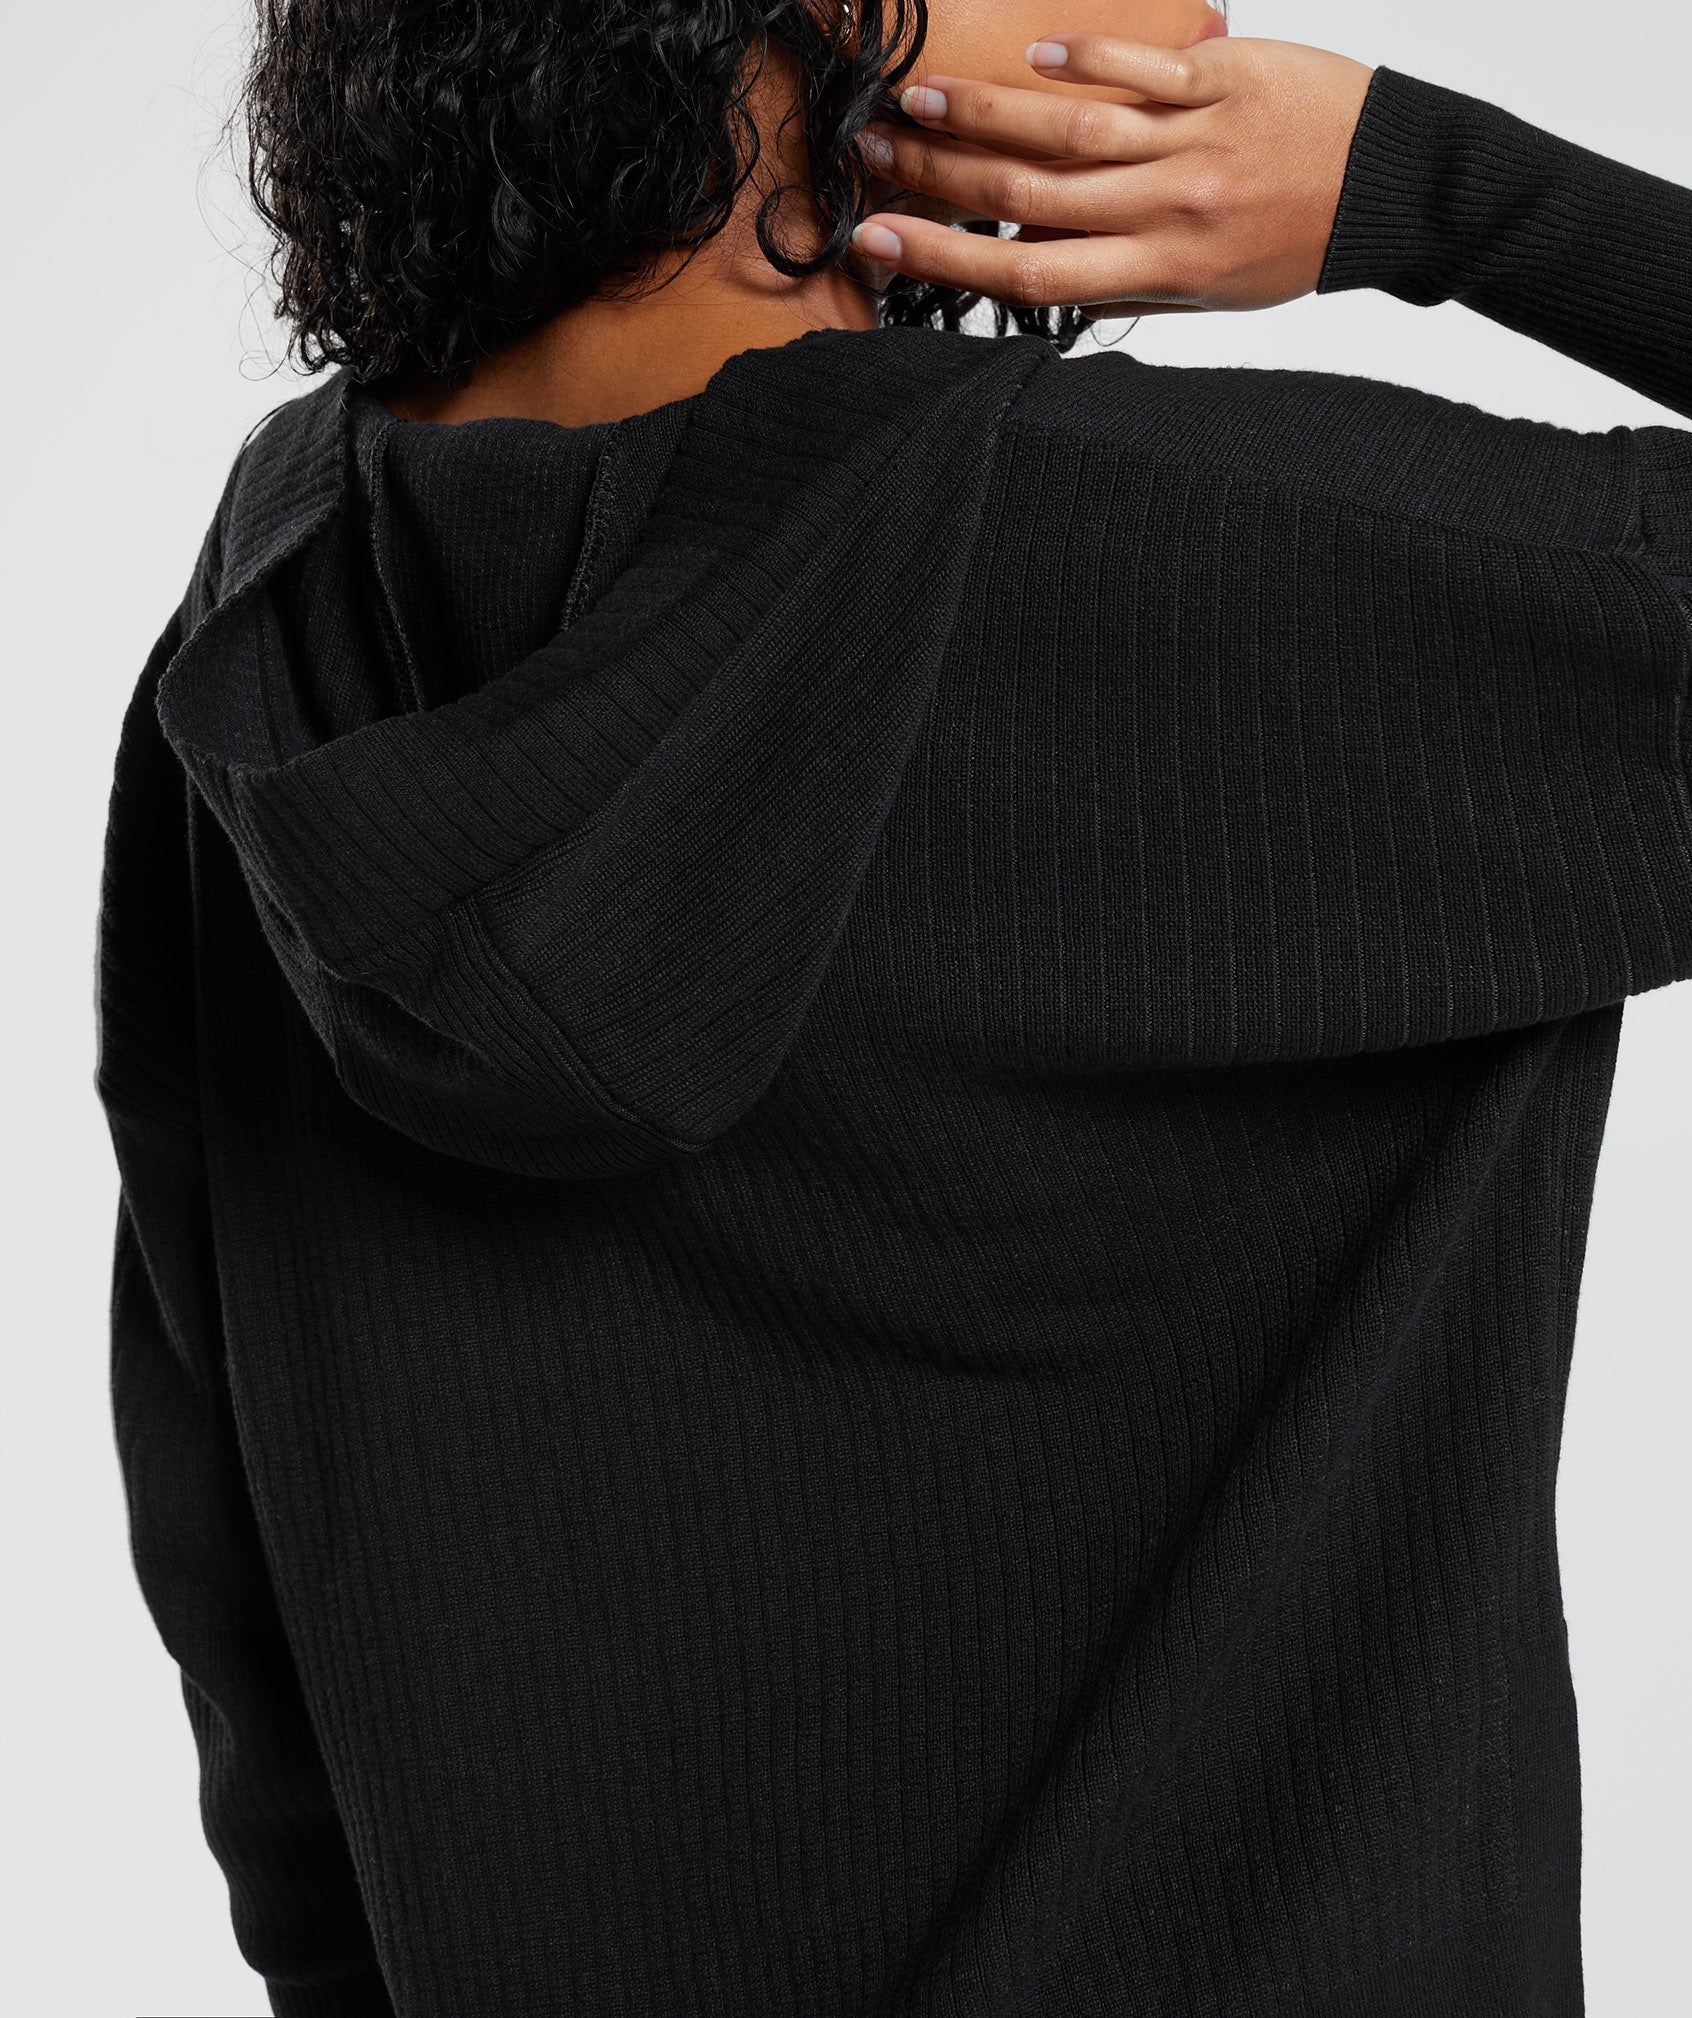 Pause Knitwear Hoodie in Black/Onyx Grey - view 6